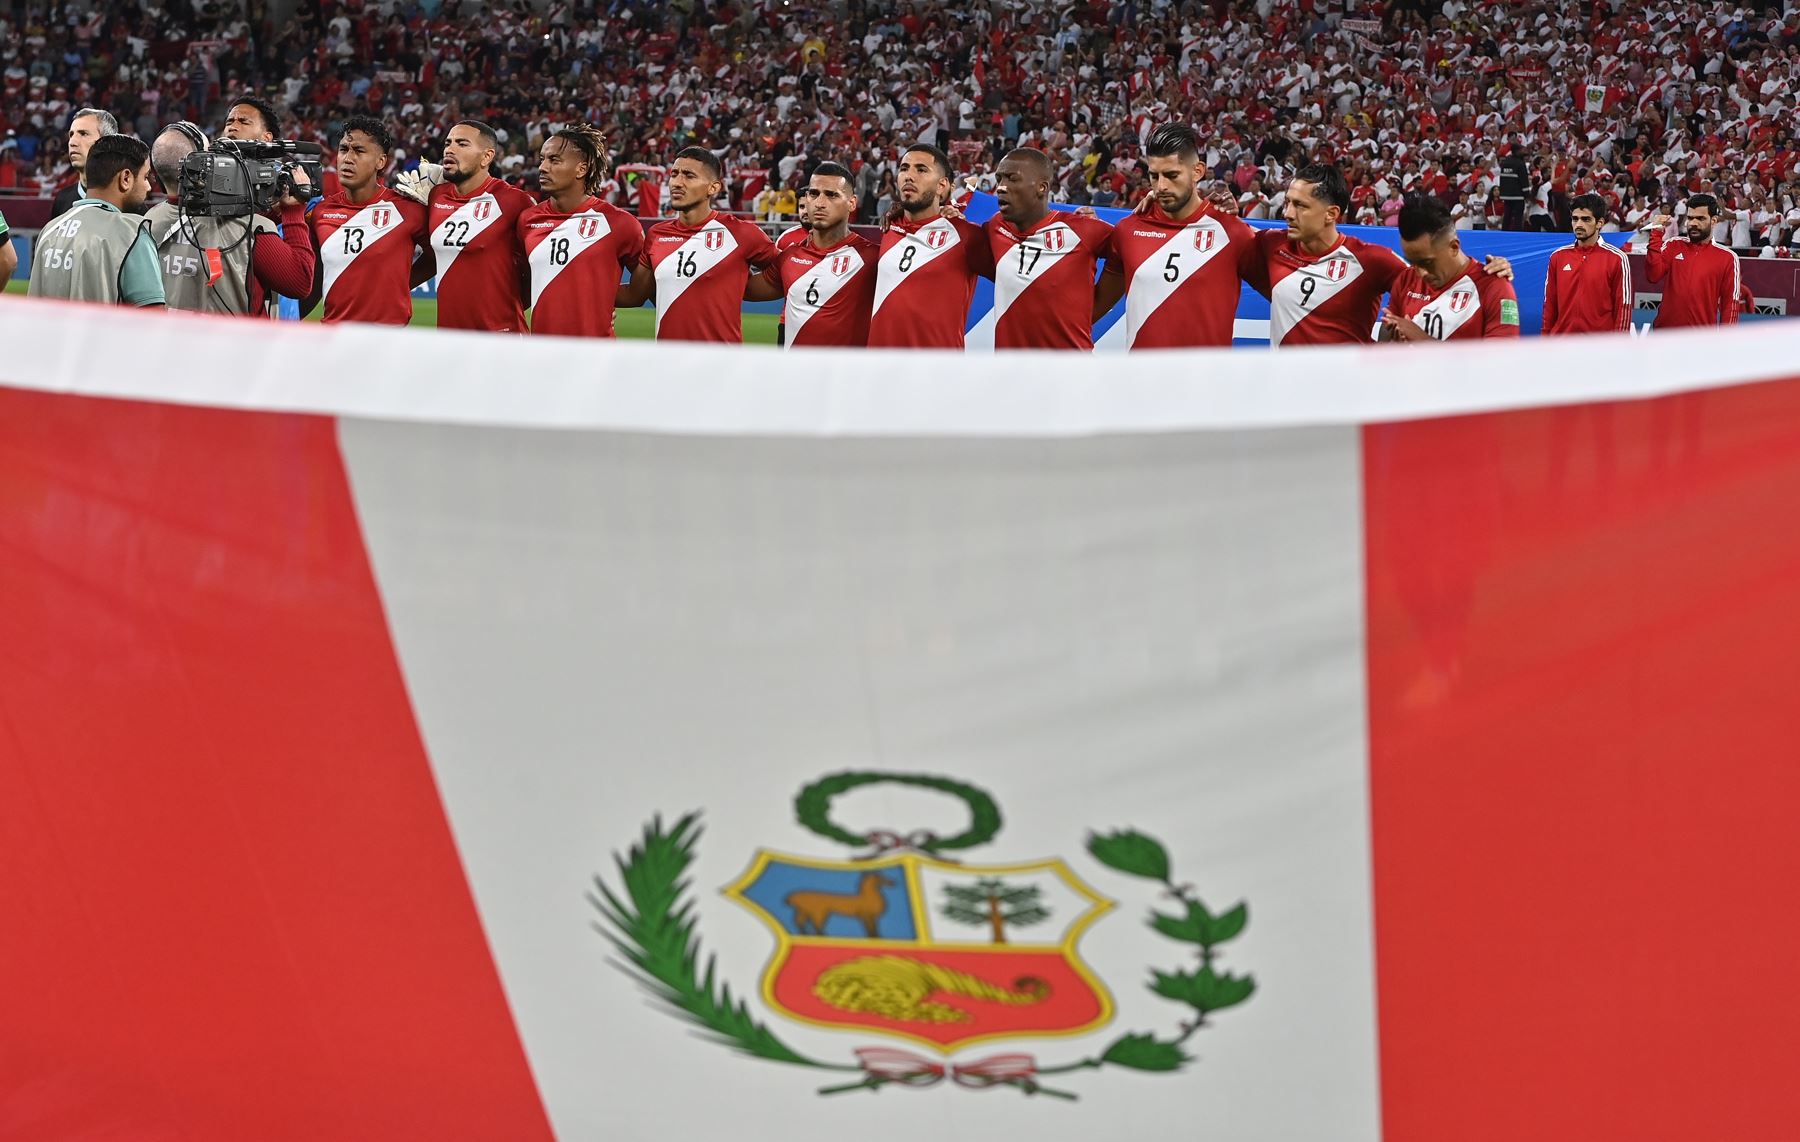 Jugadores de Perú se alinean para el partido de fútbol clasificatorio para el repechaje entre Australia y Perú en Al Rayyan, Qatar. Foto: EFE